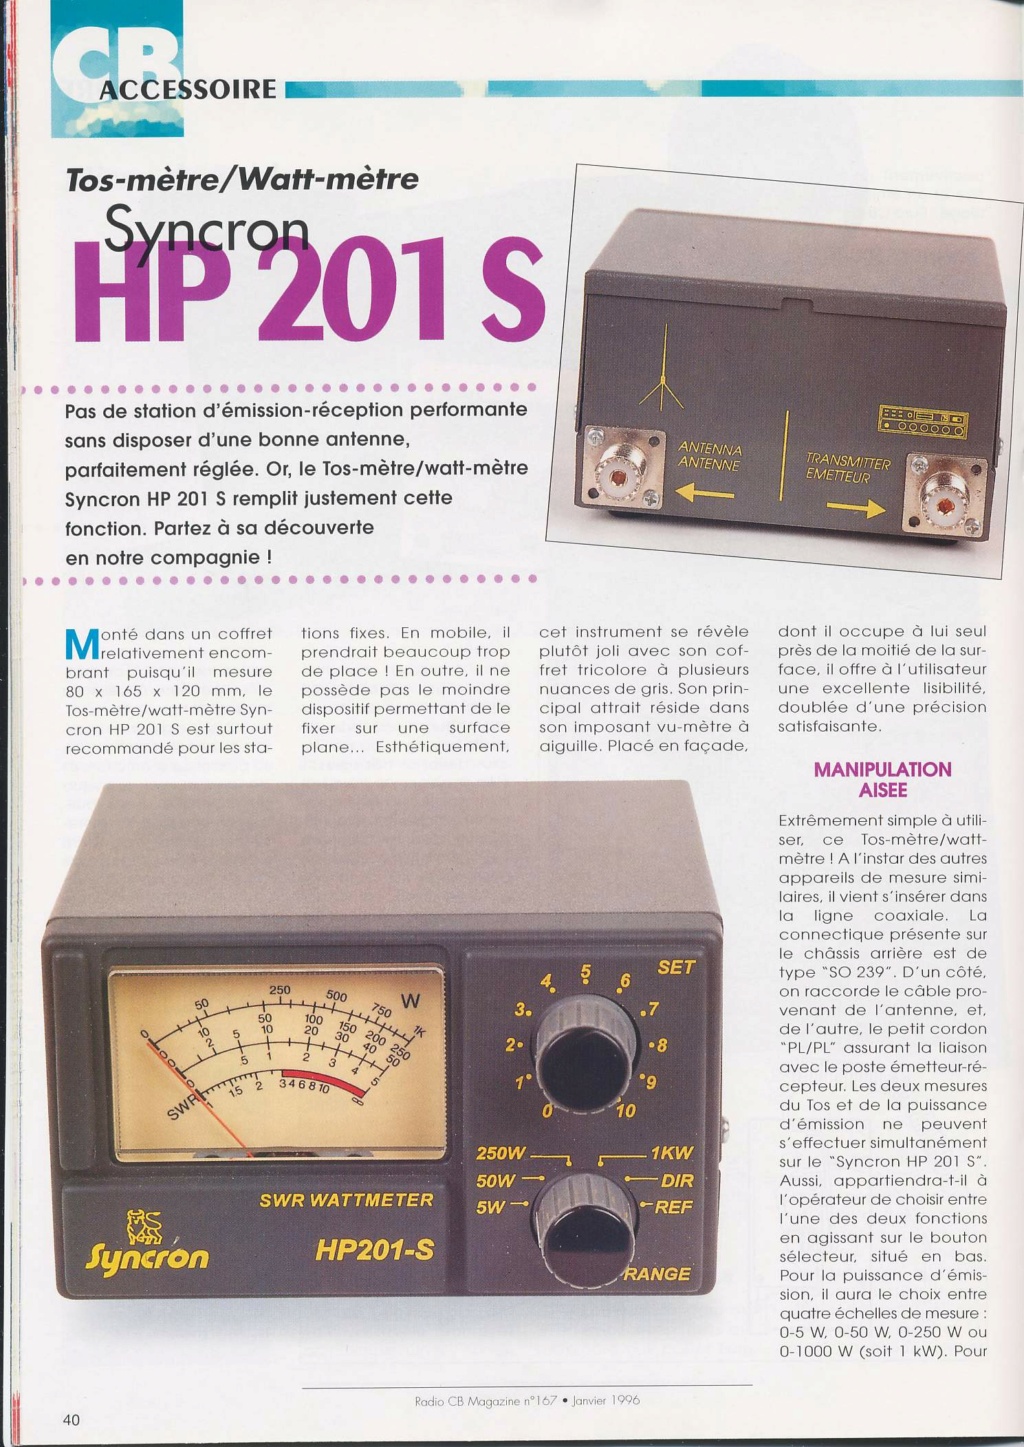 HP201 - Zetagi HP201 (Tosmètre-Wattmètre pous station fixe) Hp_20110